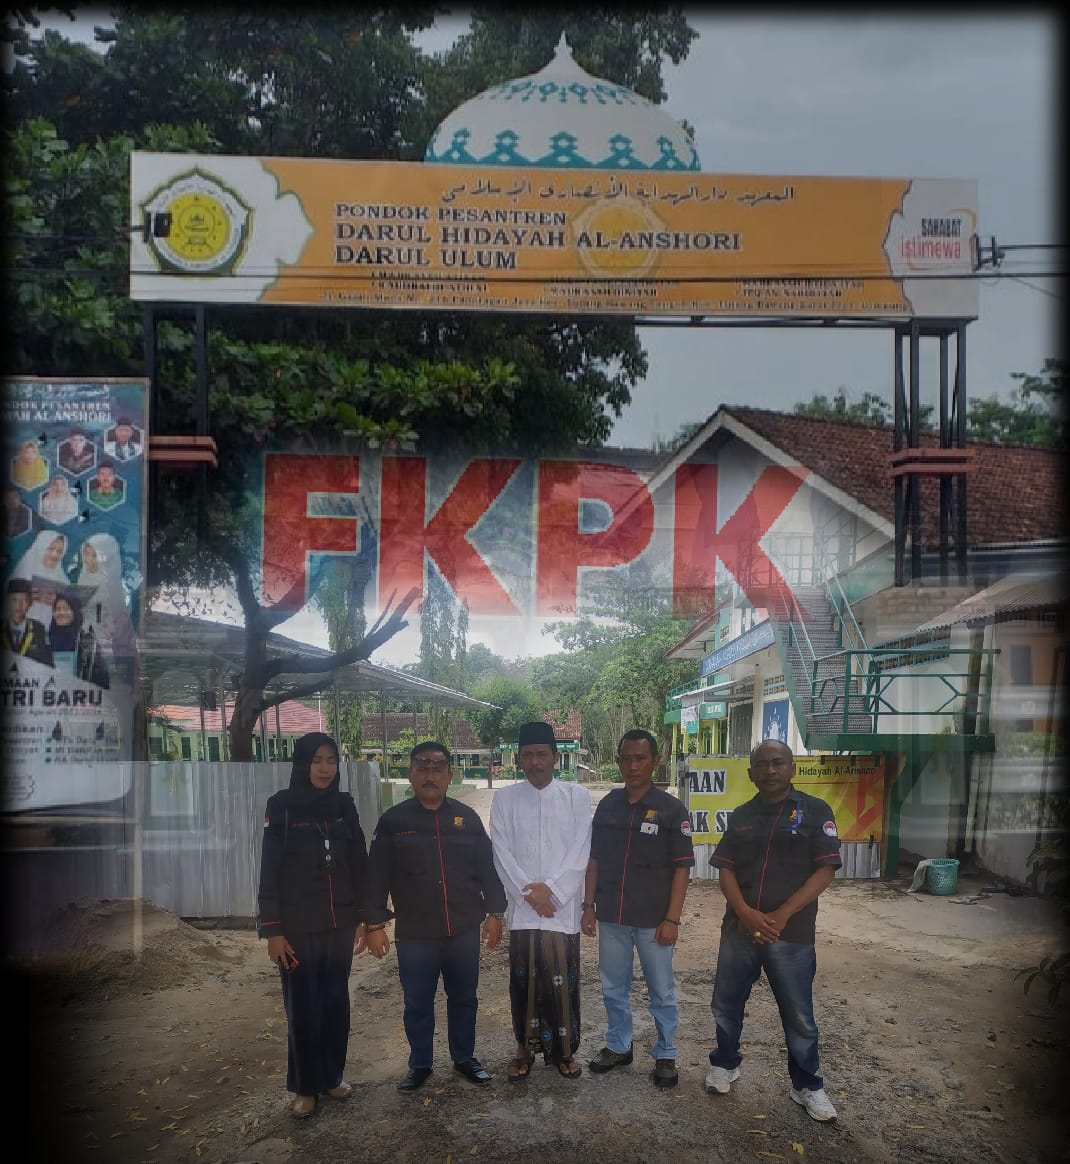 FKPK Minta Pondok Pesantren Darul Ulum Untuk Bongkar Gerbang Jalan Yang ditutup